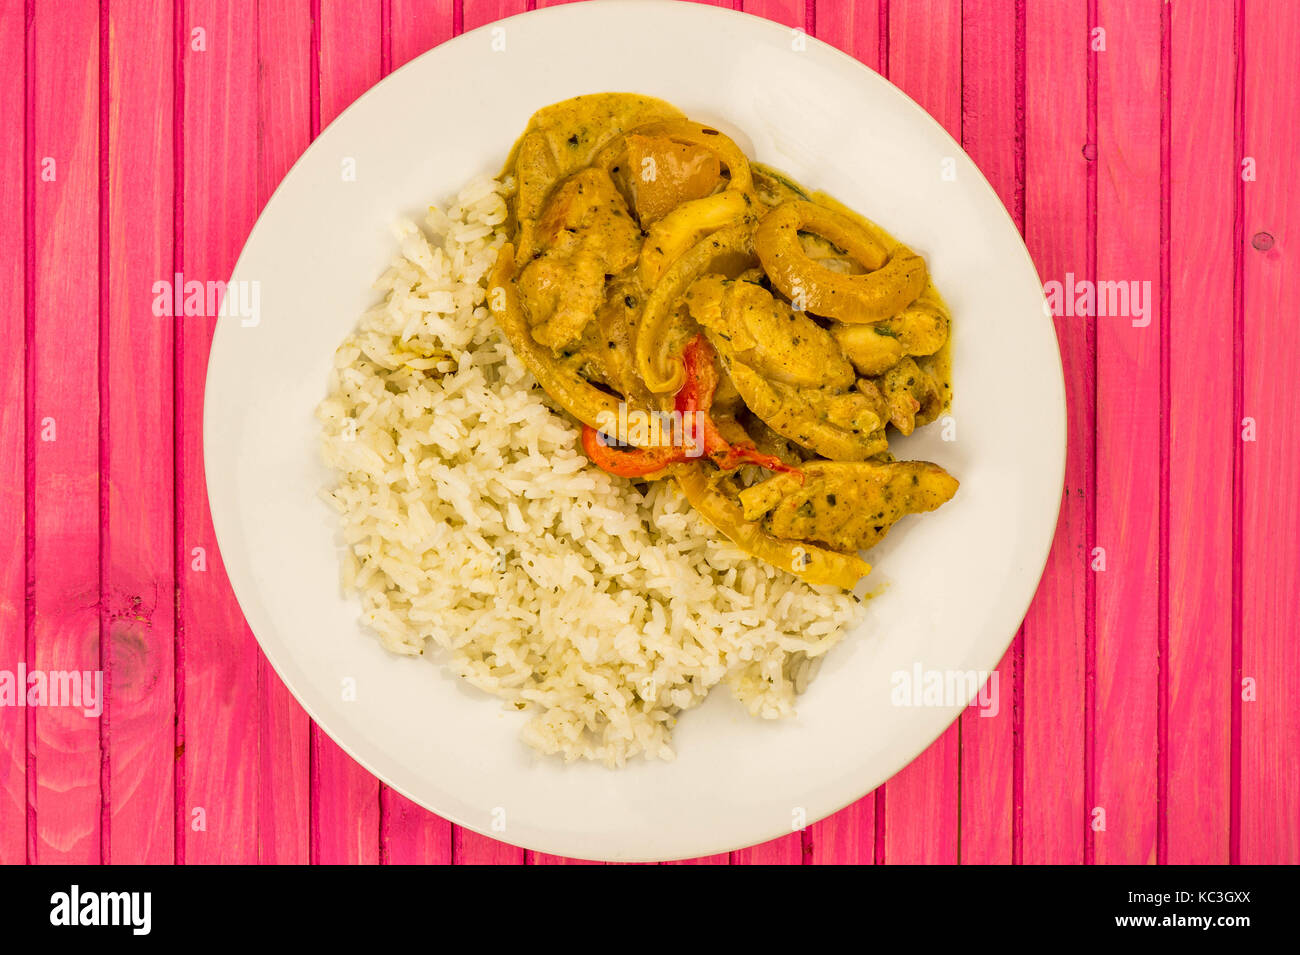 Estilo tailandés curry panang de pollo con arroz jazmín contra un fondo de madera rosa Foto de stock